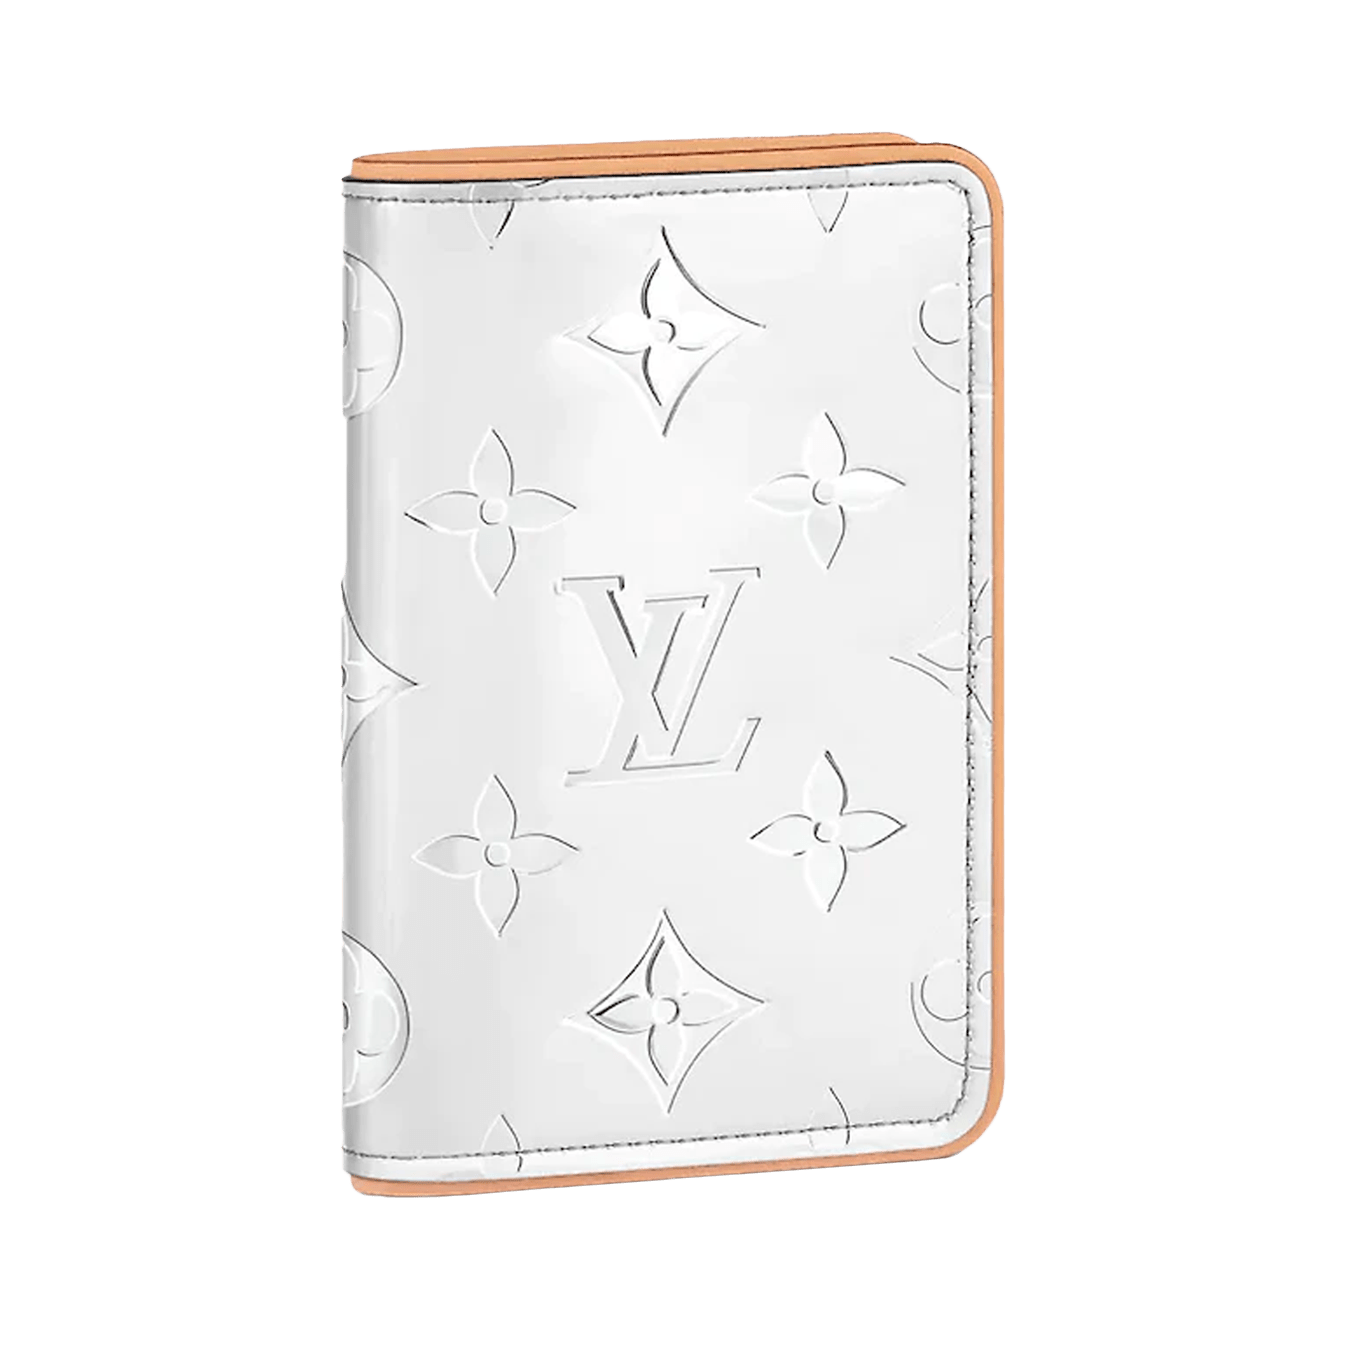 Louis Vuitton Slender Pocket Organizer Monogram Mirror in Coated Canvas - US